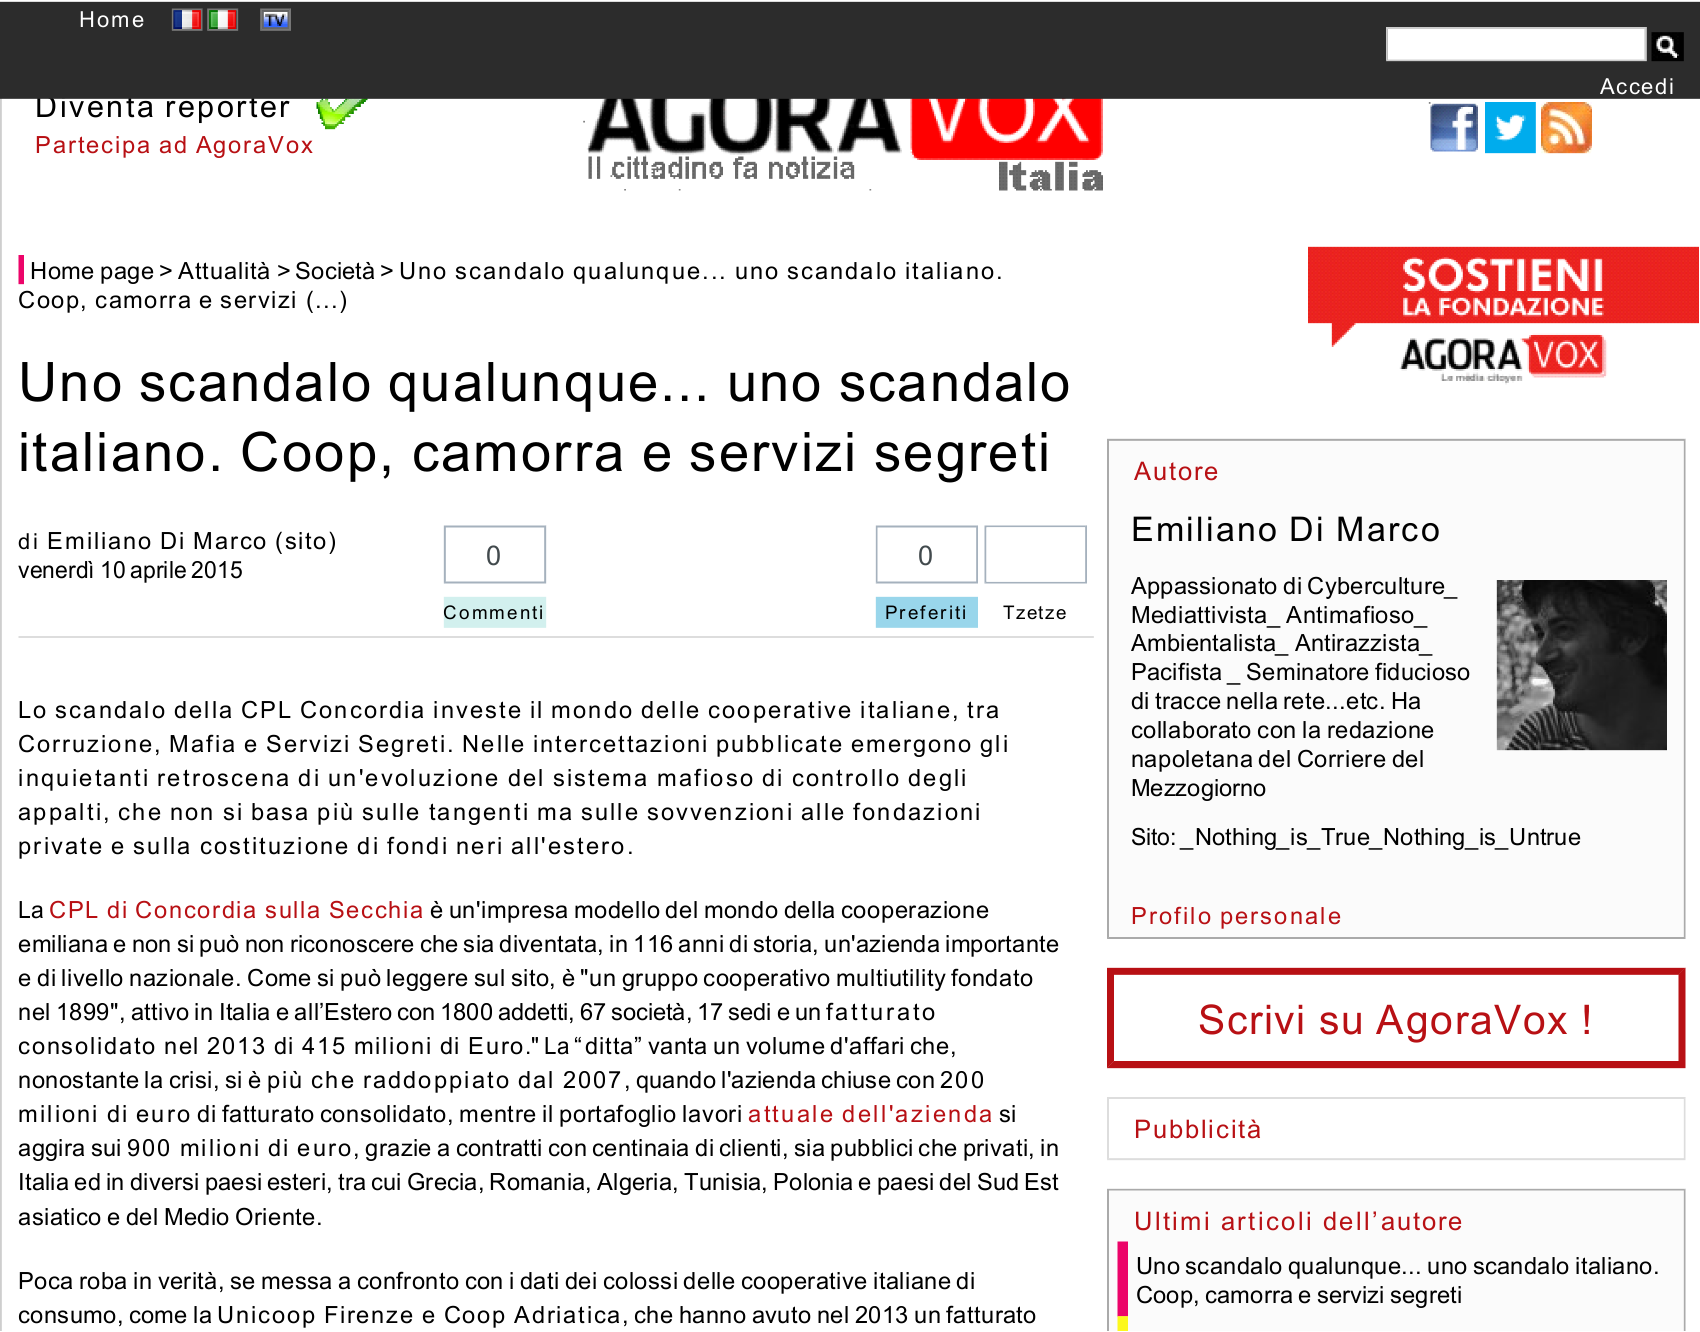 Articolo pubblicato sul sito agoravox.it Più : www.alexa.com/siteinfo/agoravox.it Estrazione : 10/04/2015 11:00:33 Categoria : Attualità File : piwi-9-12-124878-20150410-2005013950.